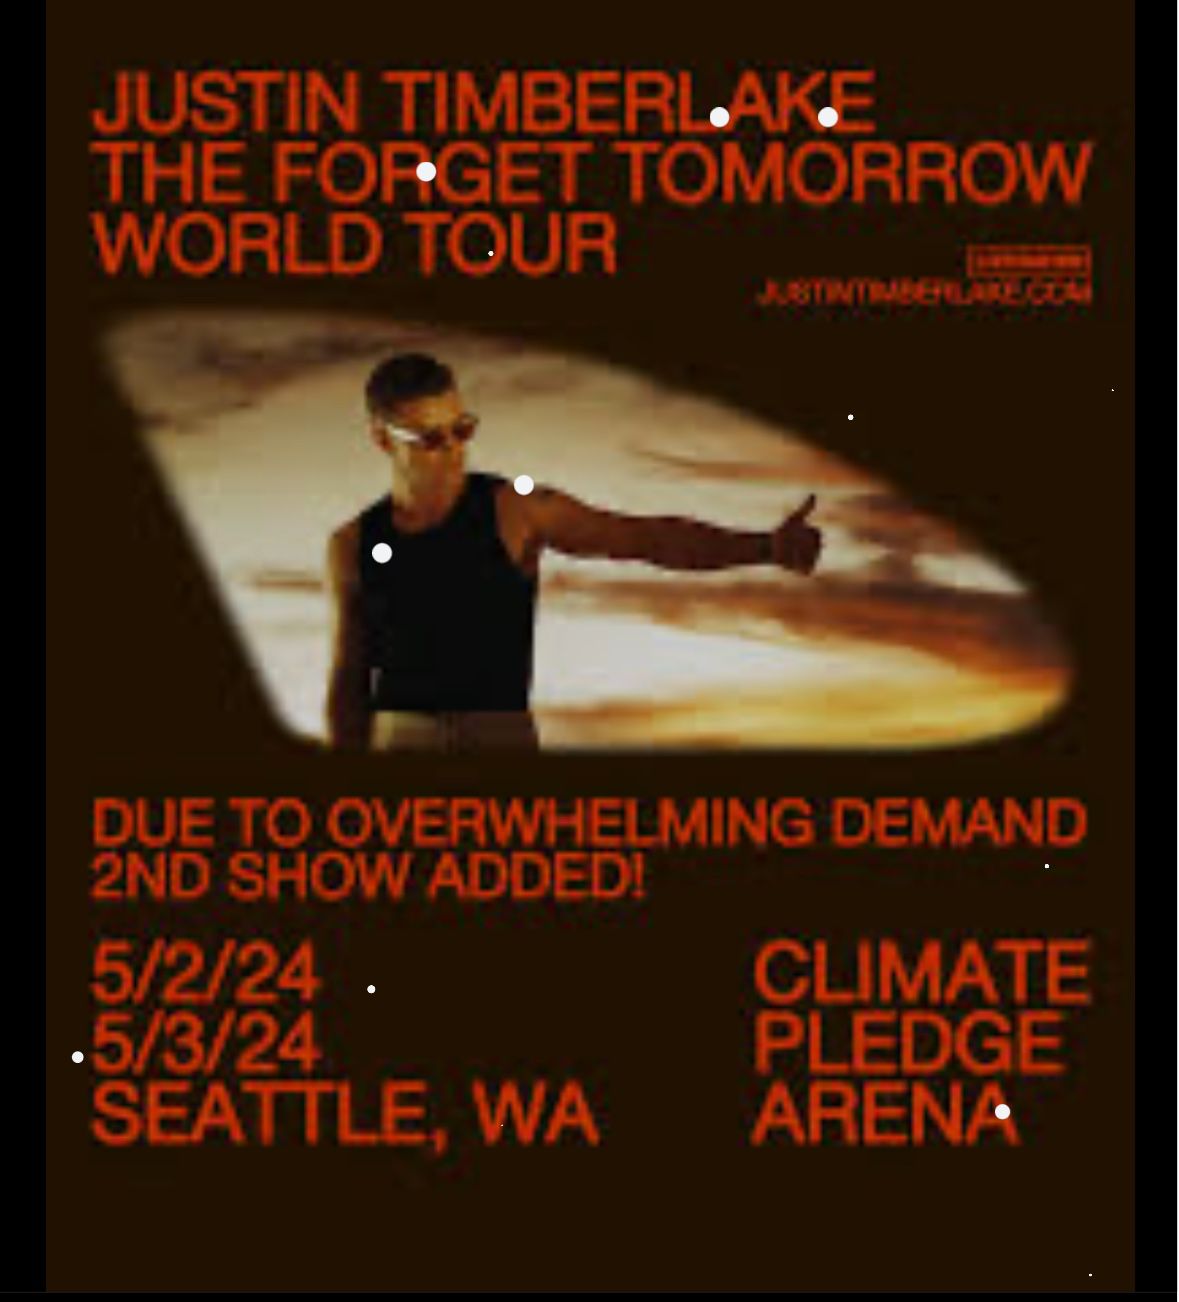 Justin Timberlake May 3 2 Tickets